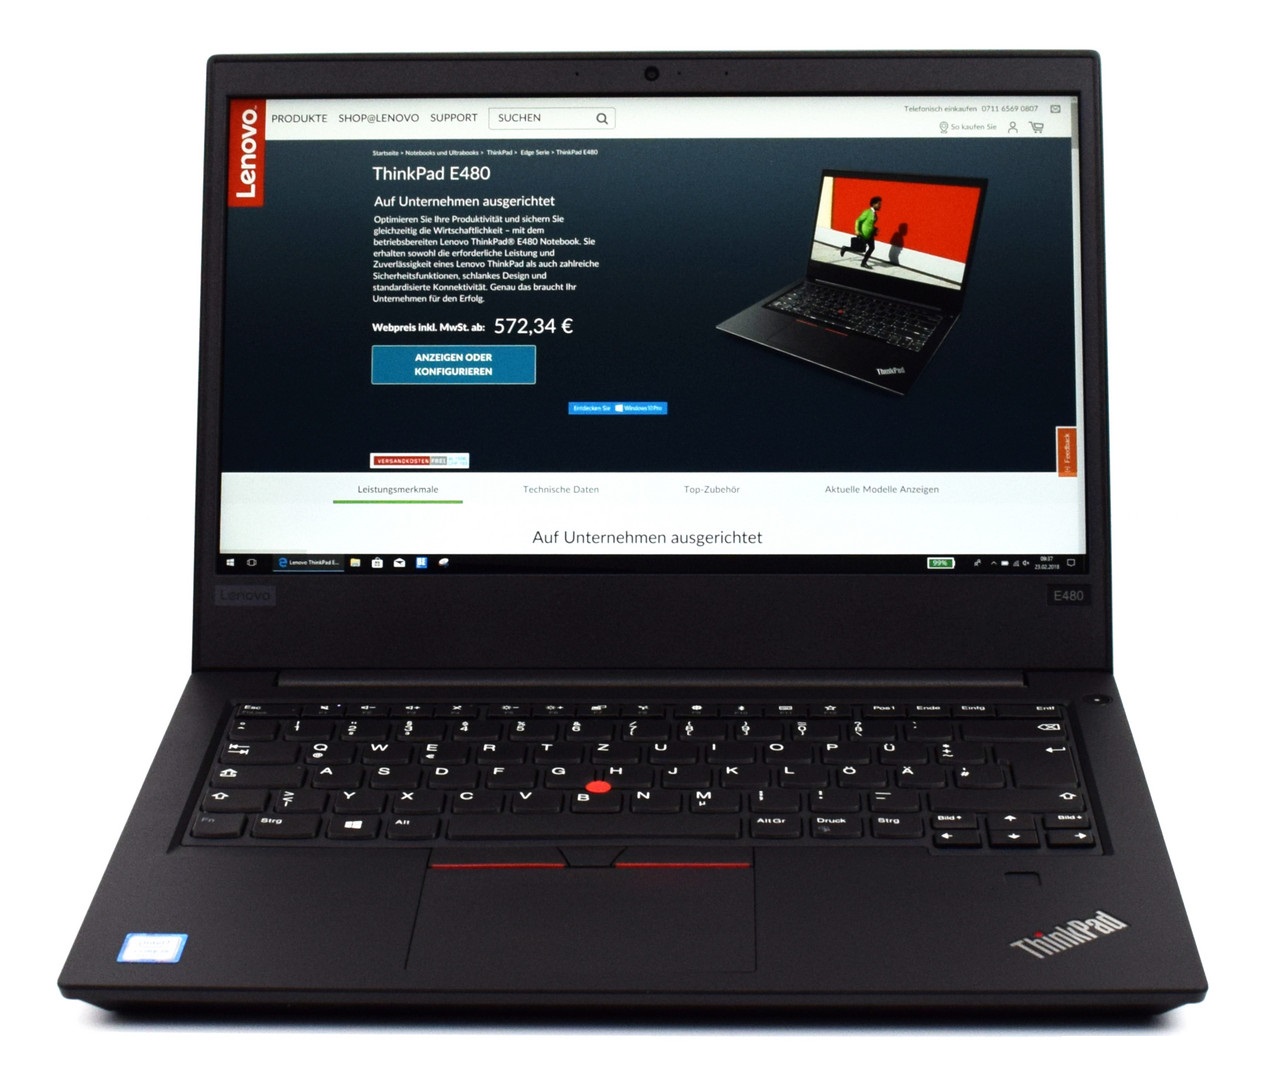 Đánh giá laptop Lenovo Thinkpad E480: Laptop văn phòng giá rẻ, Chuyên trang tư vấn laptop